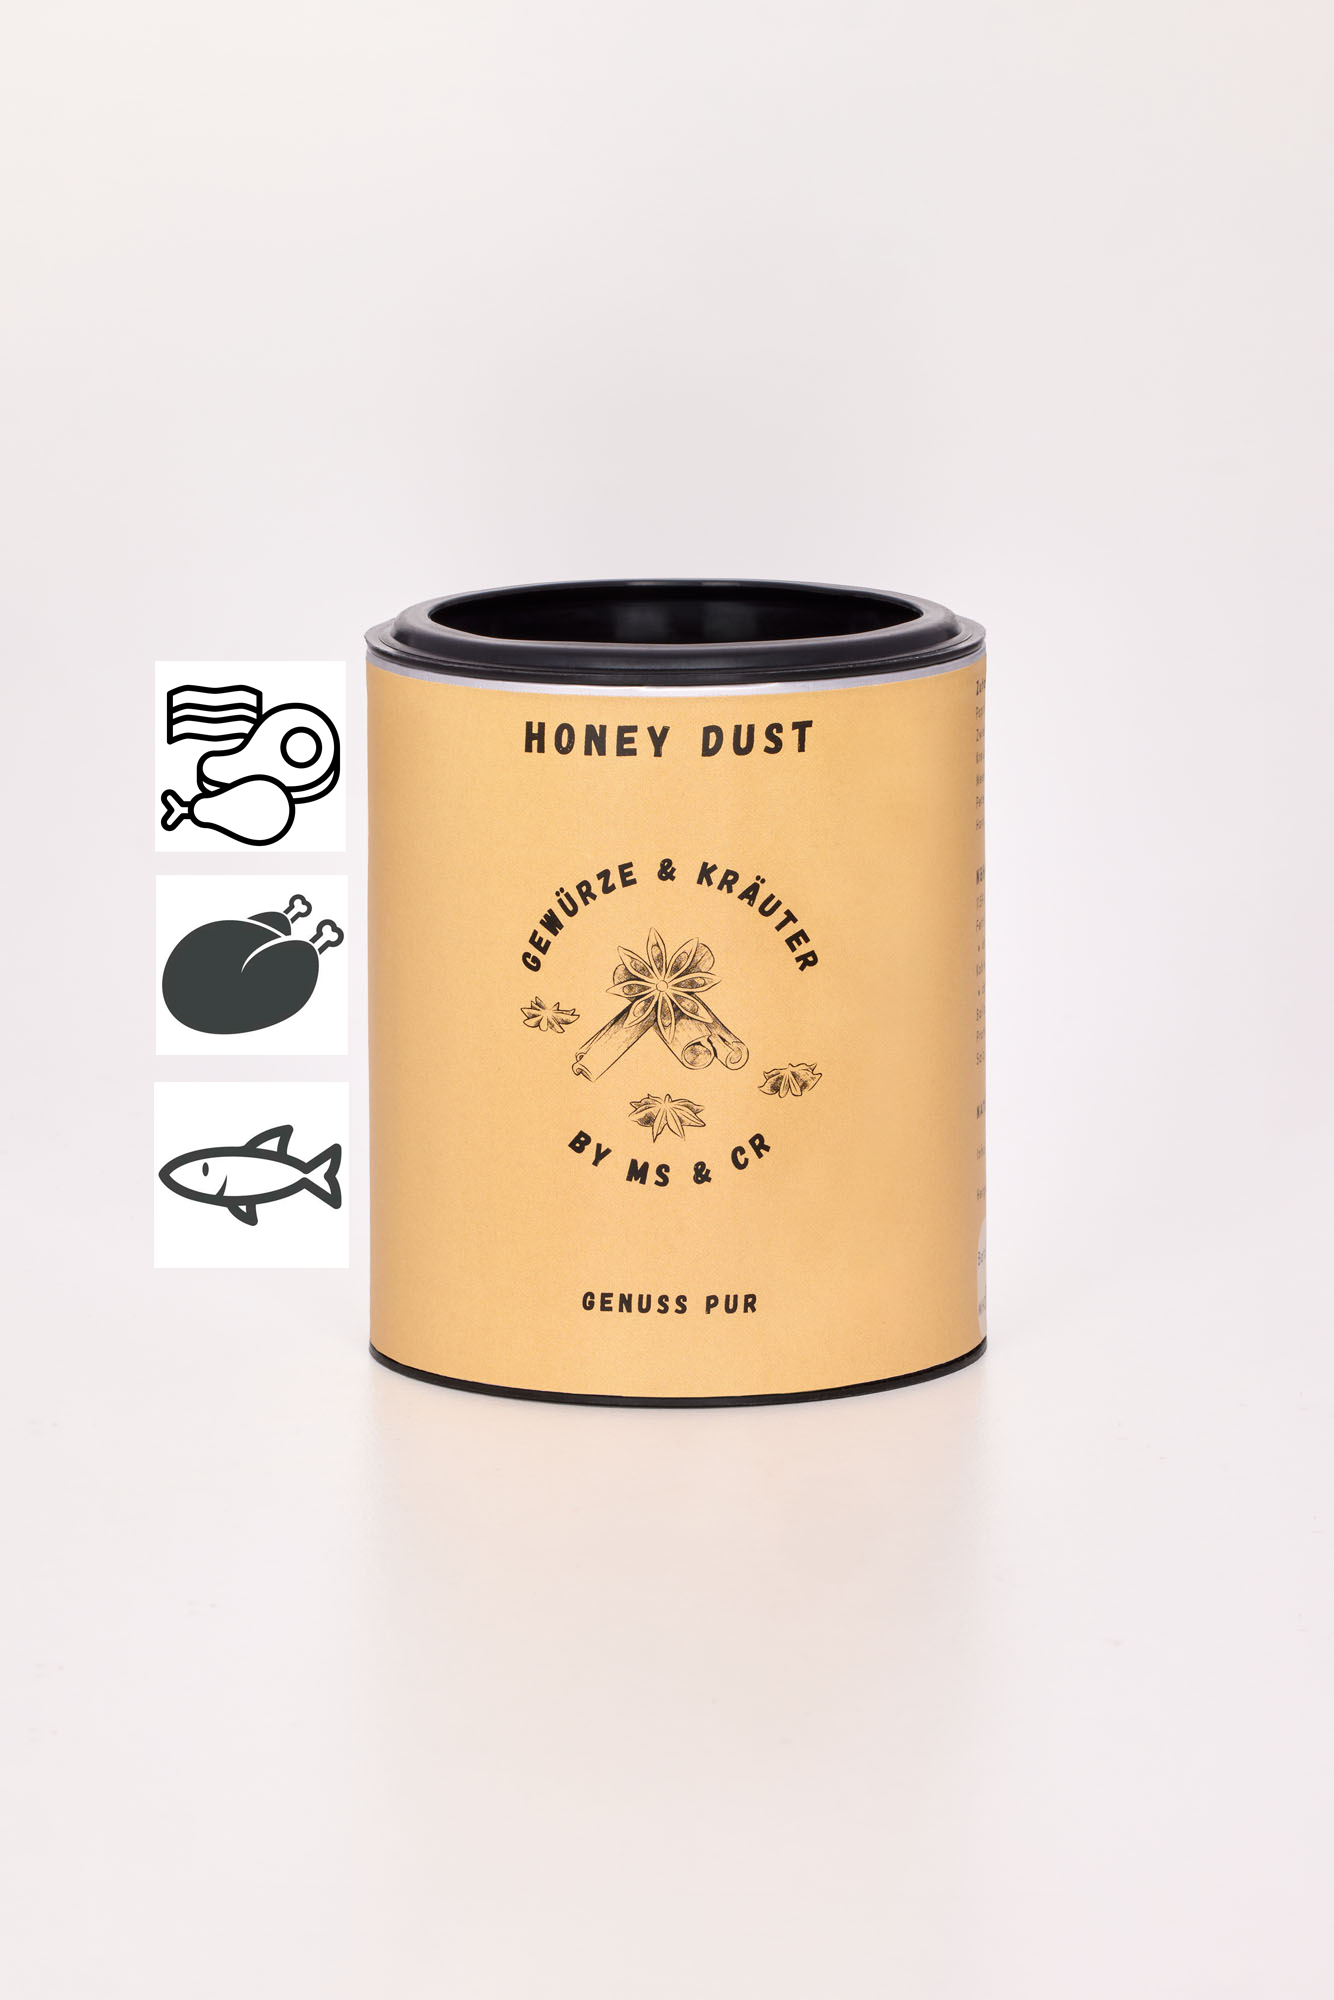 Honey Dust 100g Dose (süsslich-würzig)